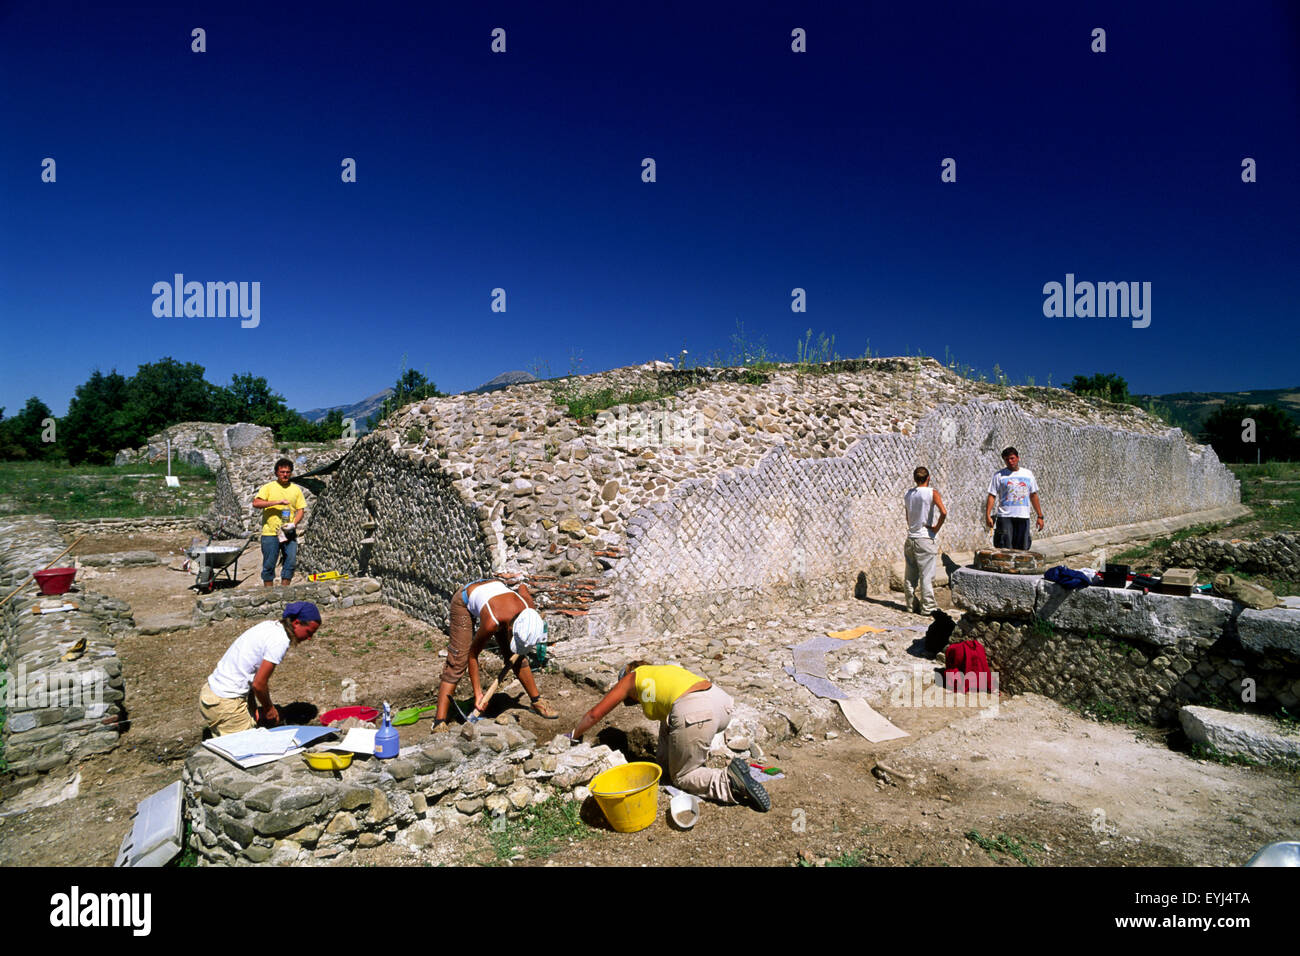 Italie, Basilicate, Grumentum, ancienne cité romaine, fouilles archéologiques Banque D'Images